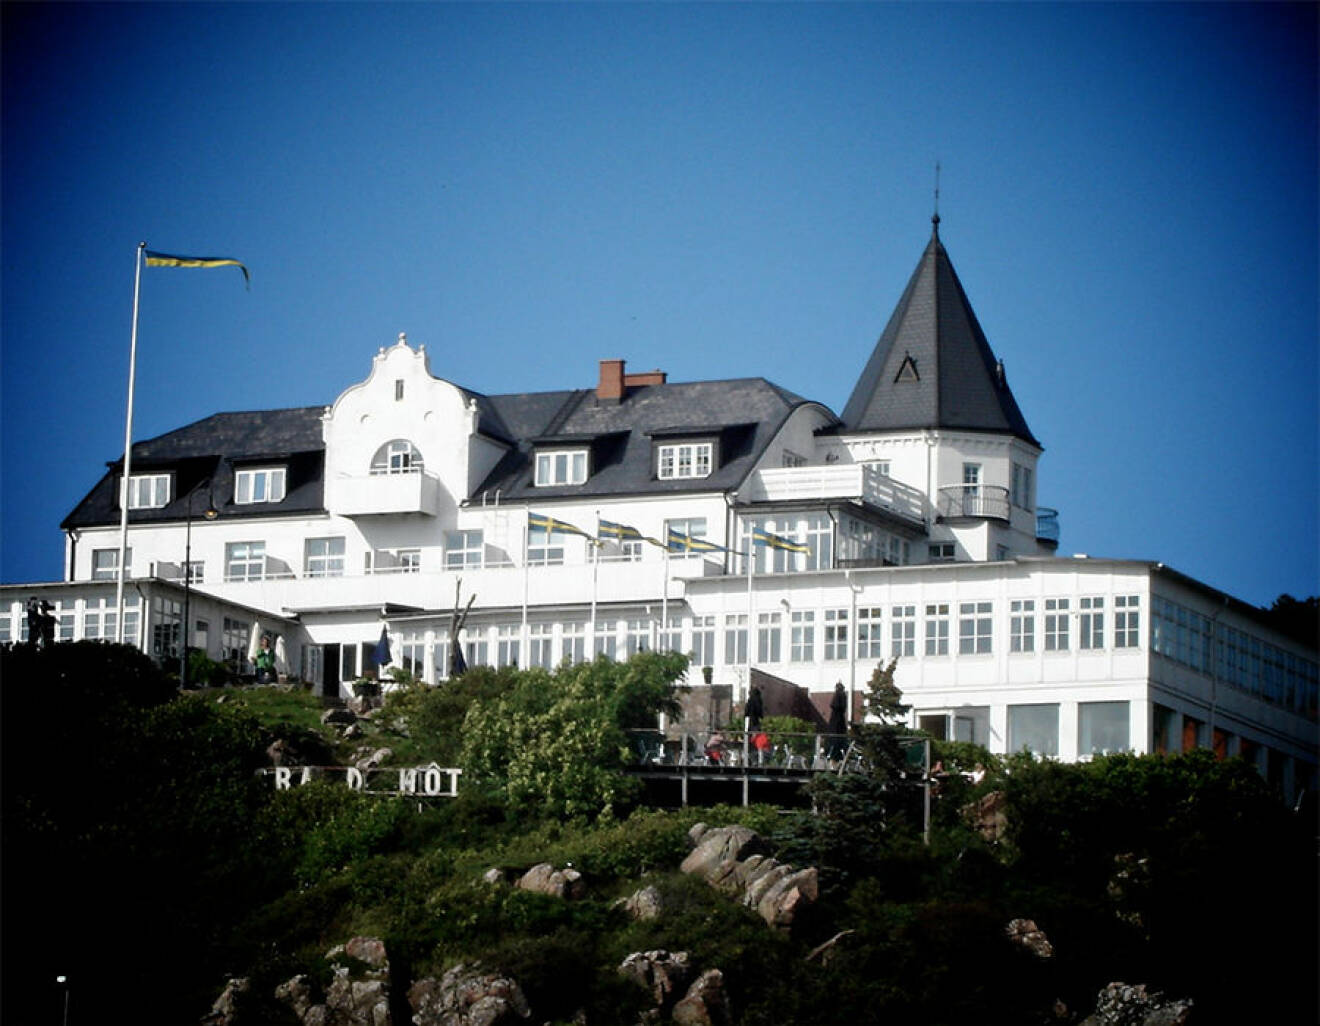 Grand Hotel, Mölle är populär att hyra för bröllop.